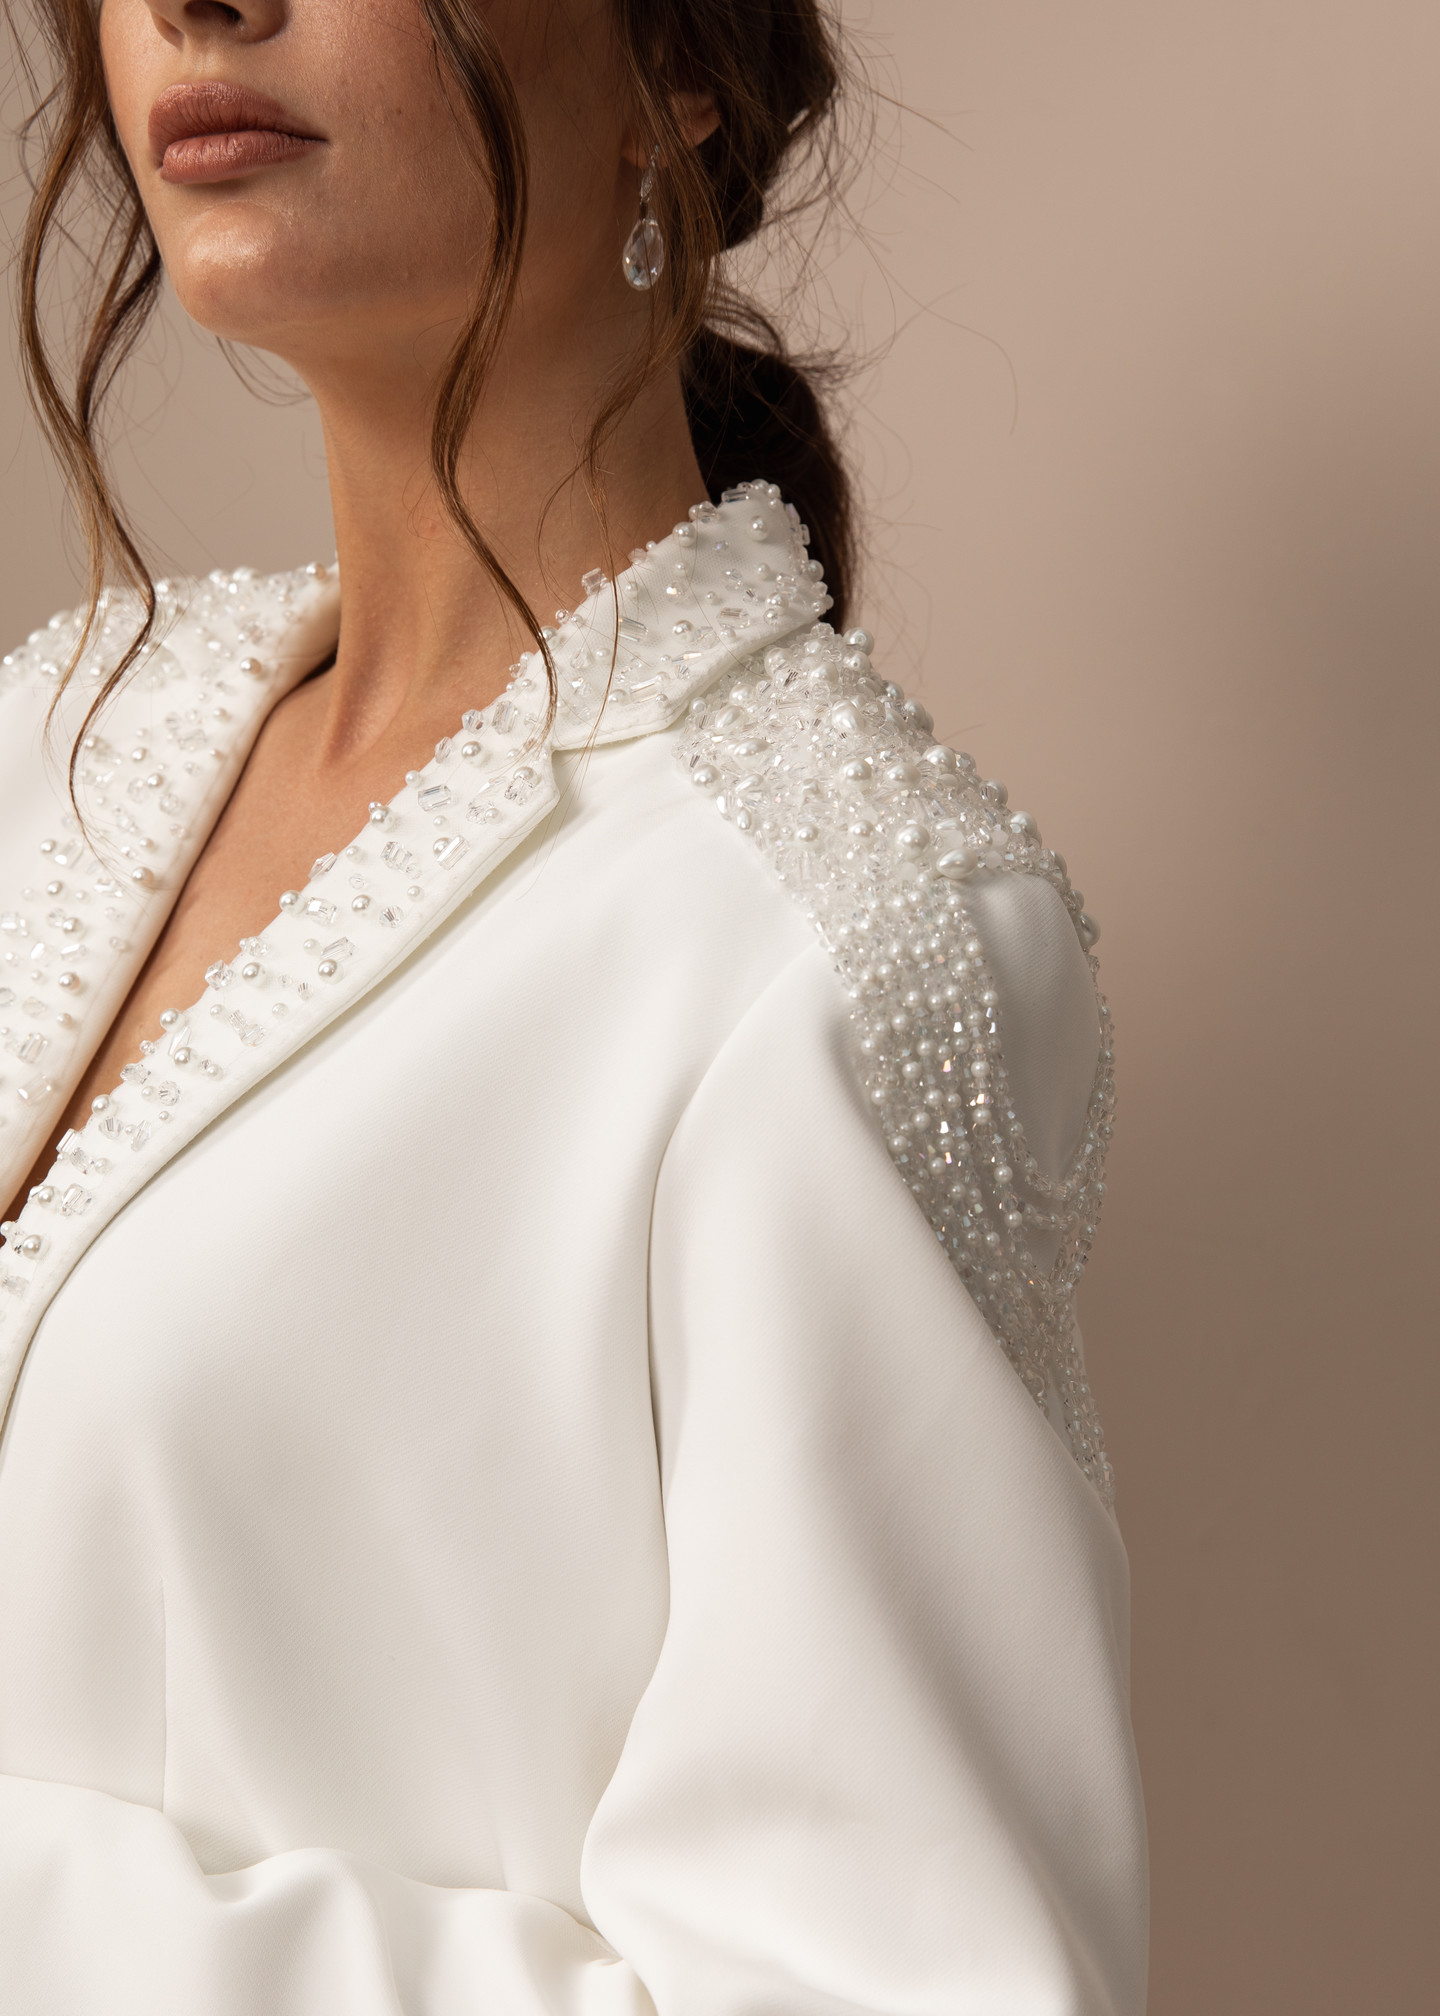 Жакет с вышивкой и эполетами, 2021, одежда, жакет, свадебное, молочно-белый, расшитый свадебный костюм №3, рукава, вышивка